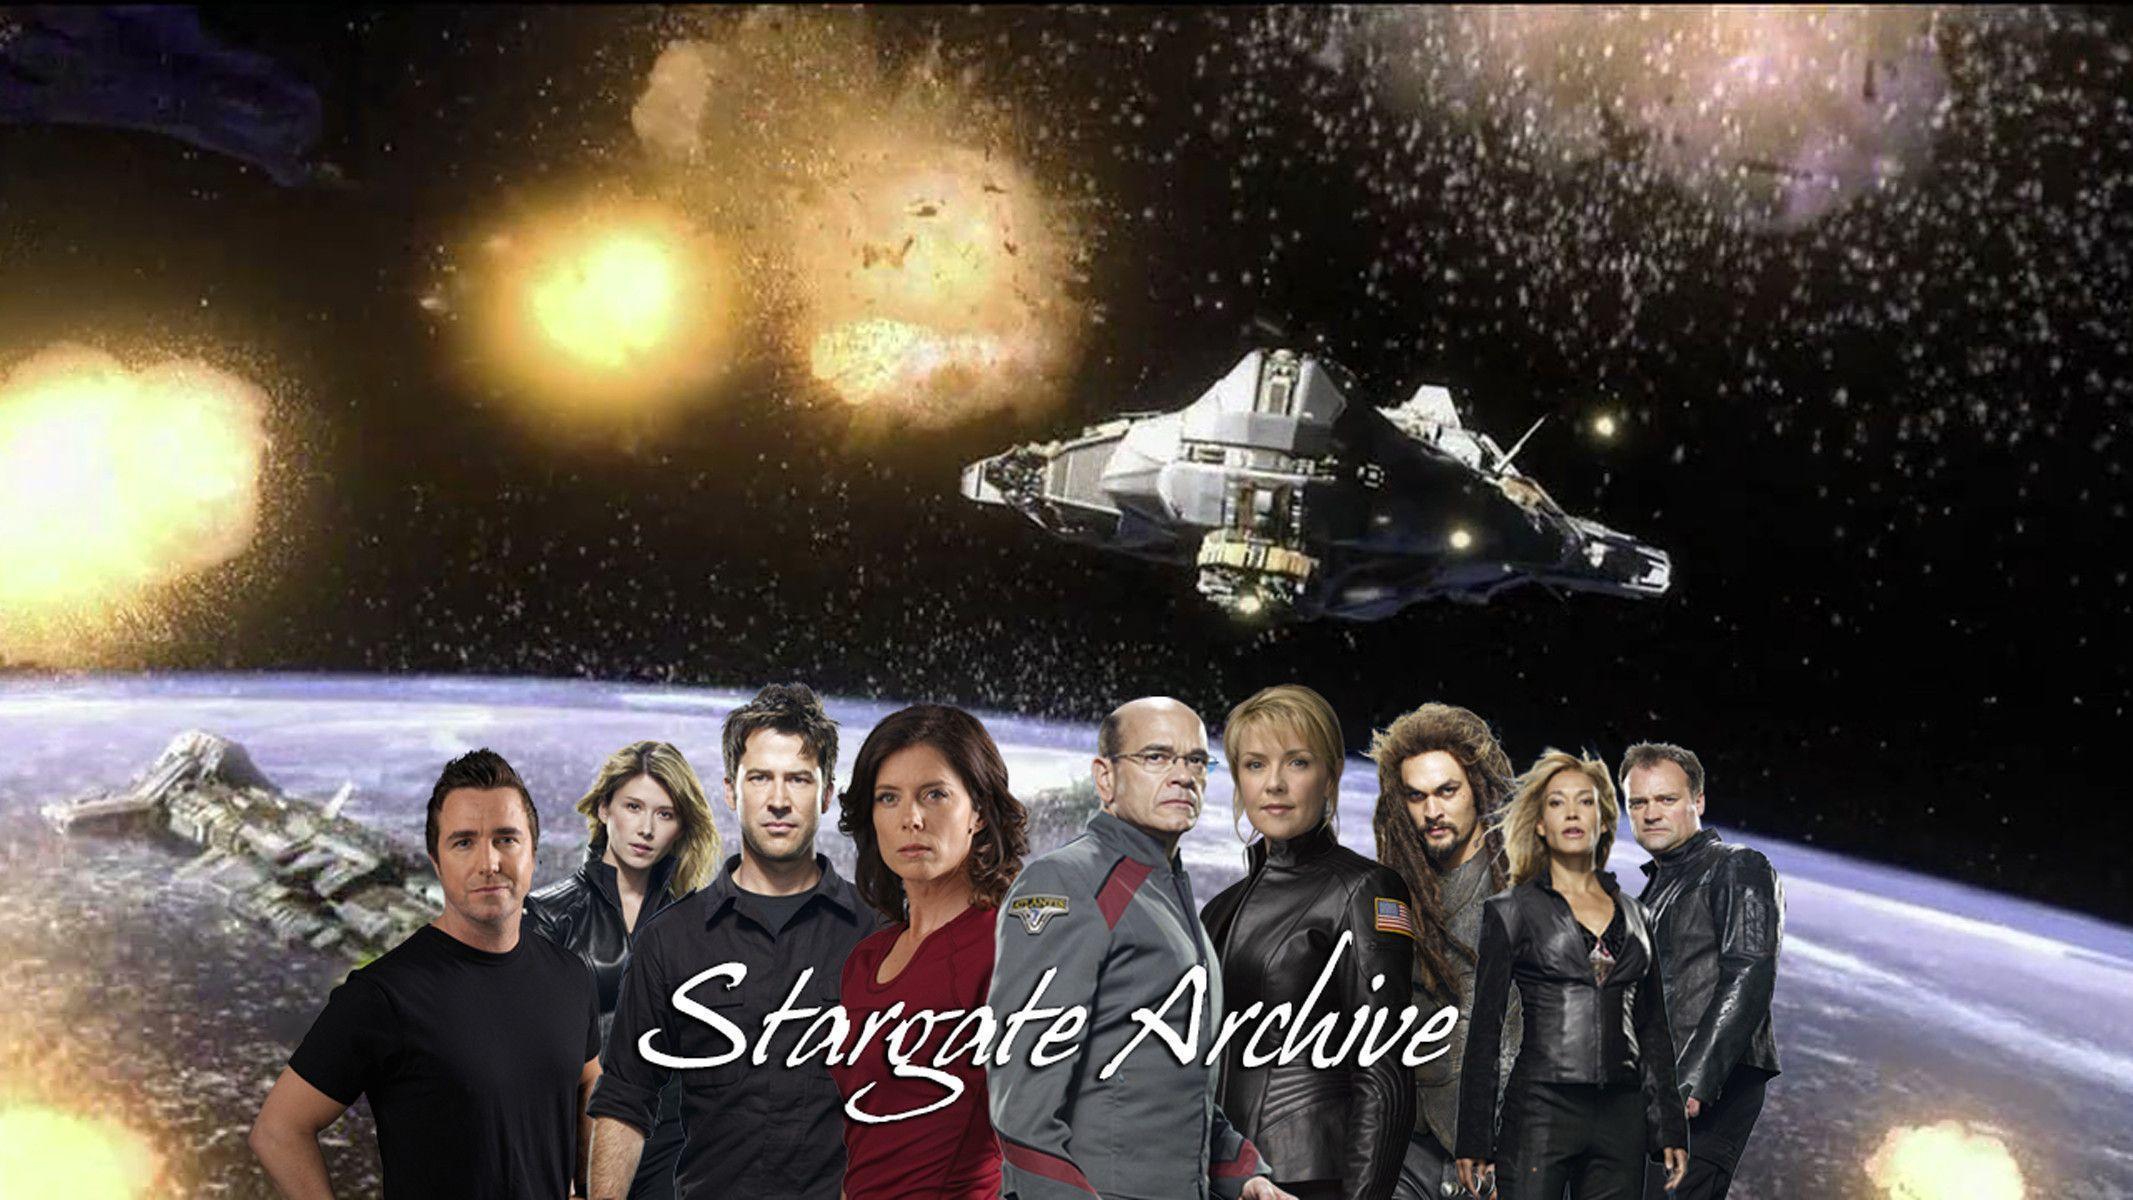 Stargate Archive Central: Stargate Atlantis, Stargate SG1